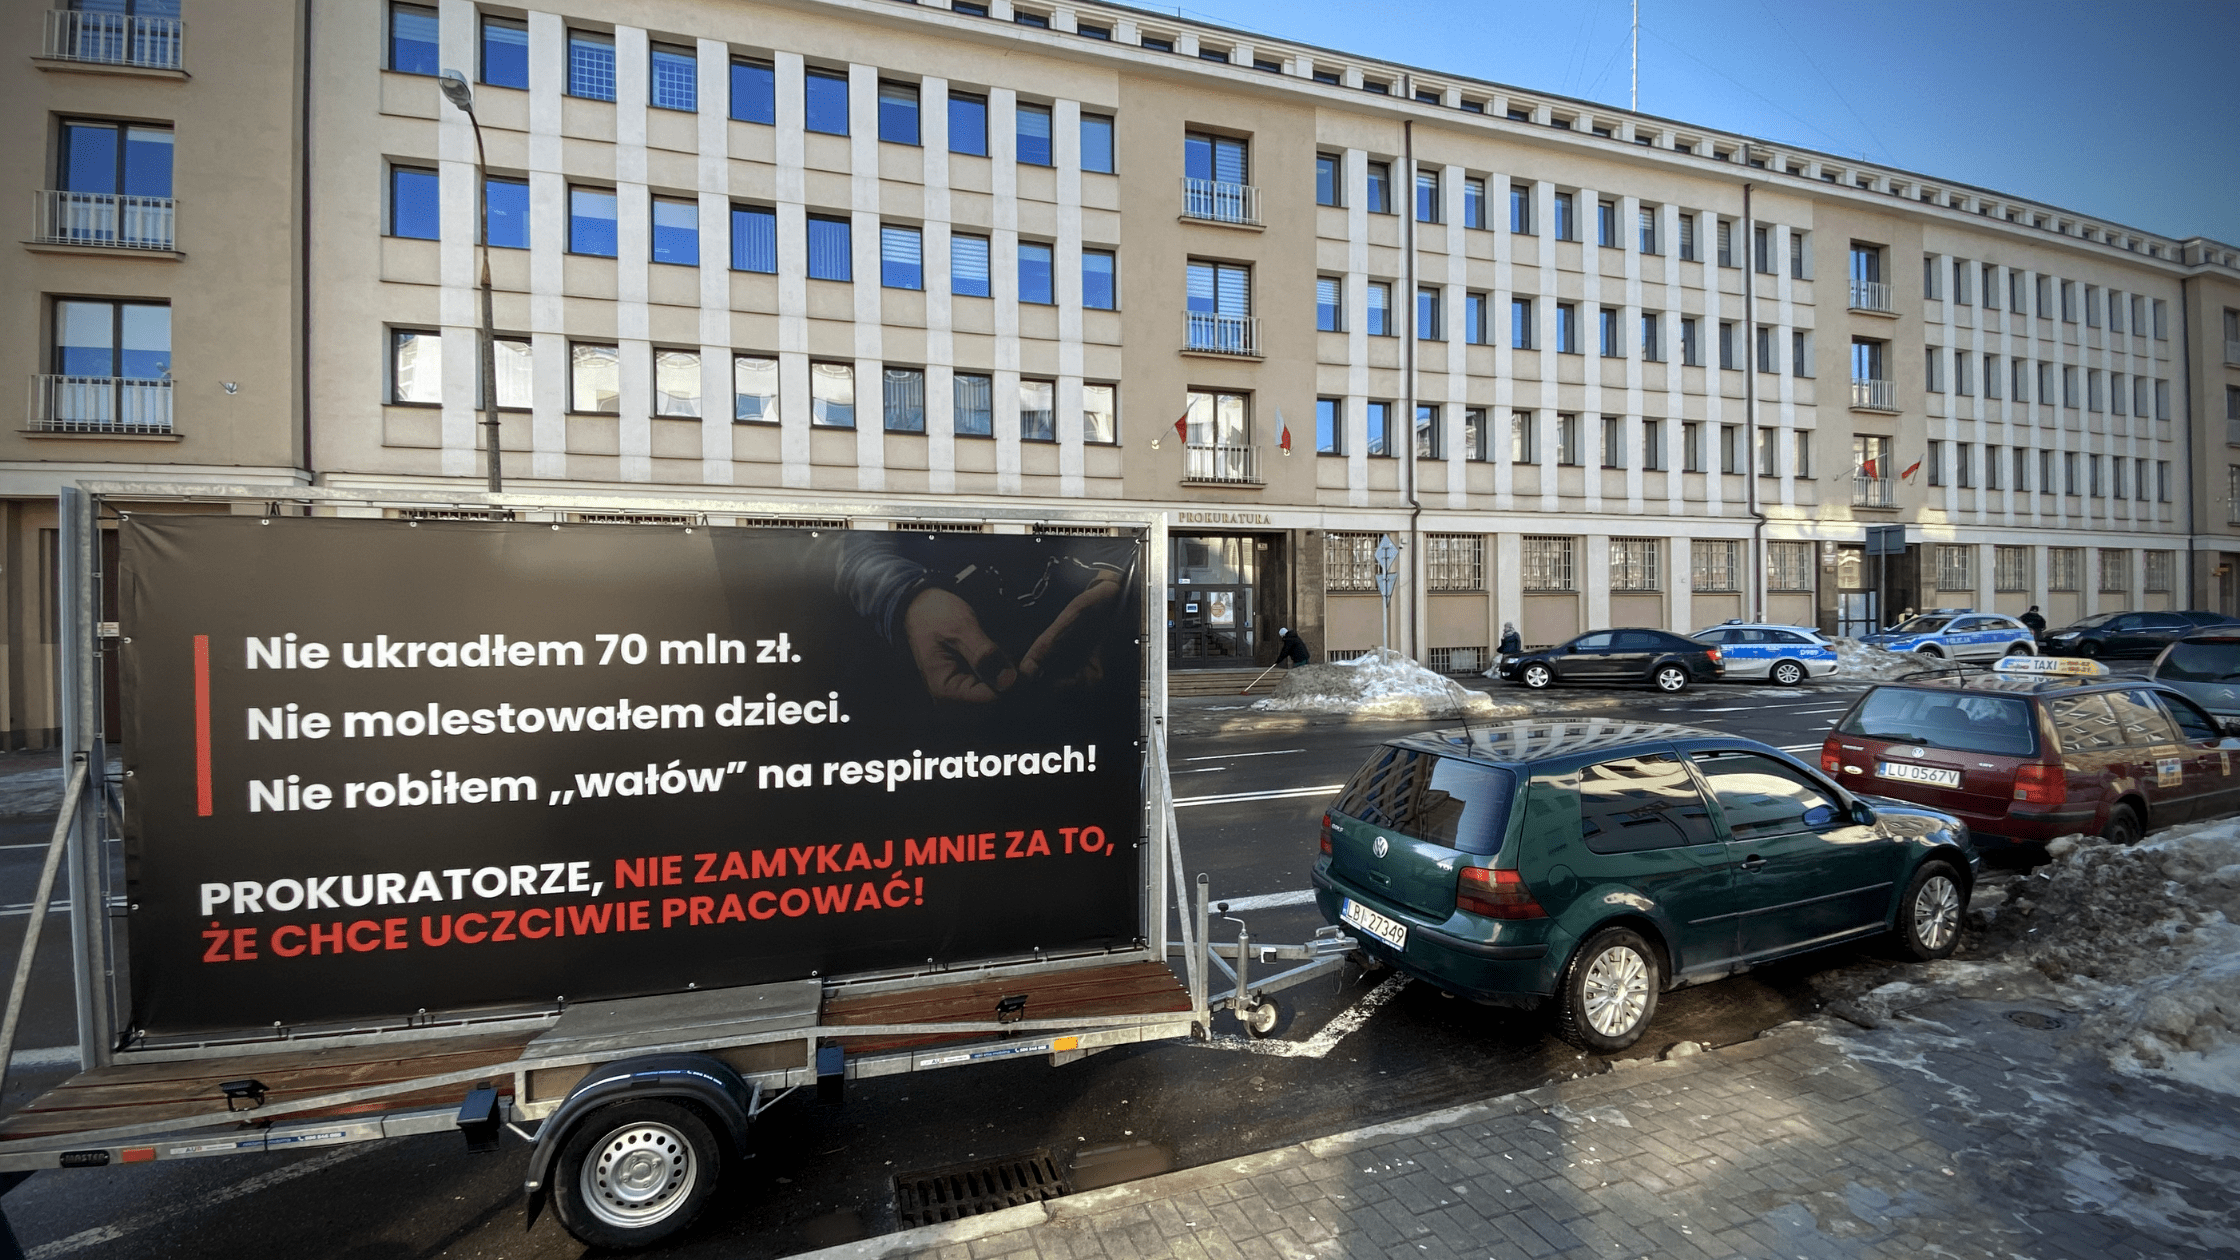 Lubelski senator zaczął kampanię informacyjną skierowną do prokuratorów - Zdjęcie główne